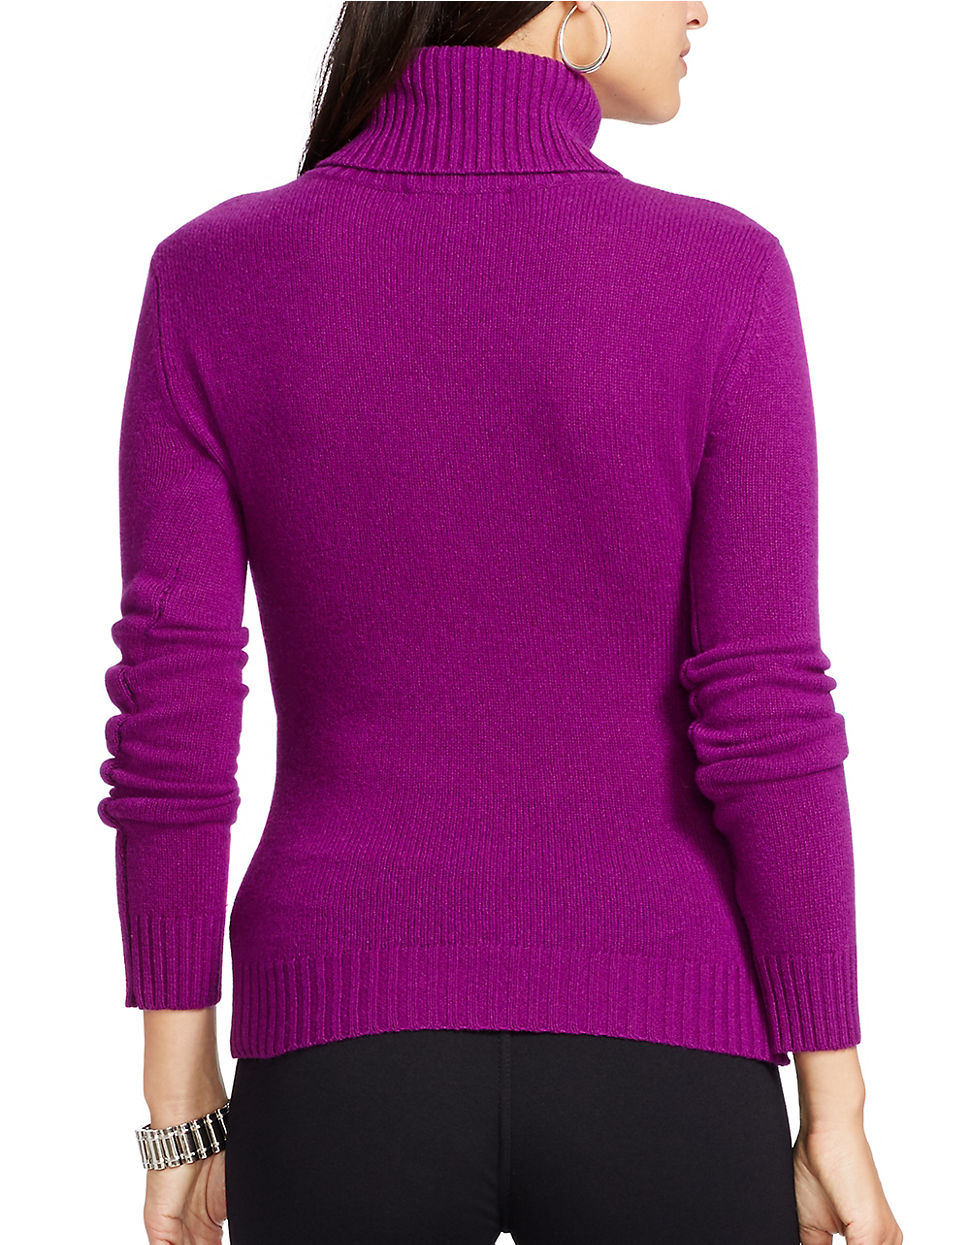 Lyst - Lauren By Ralph Lauren Wool And Cashmere Turtleneck in Purple